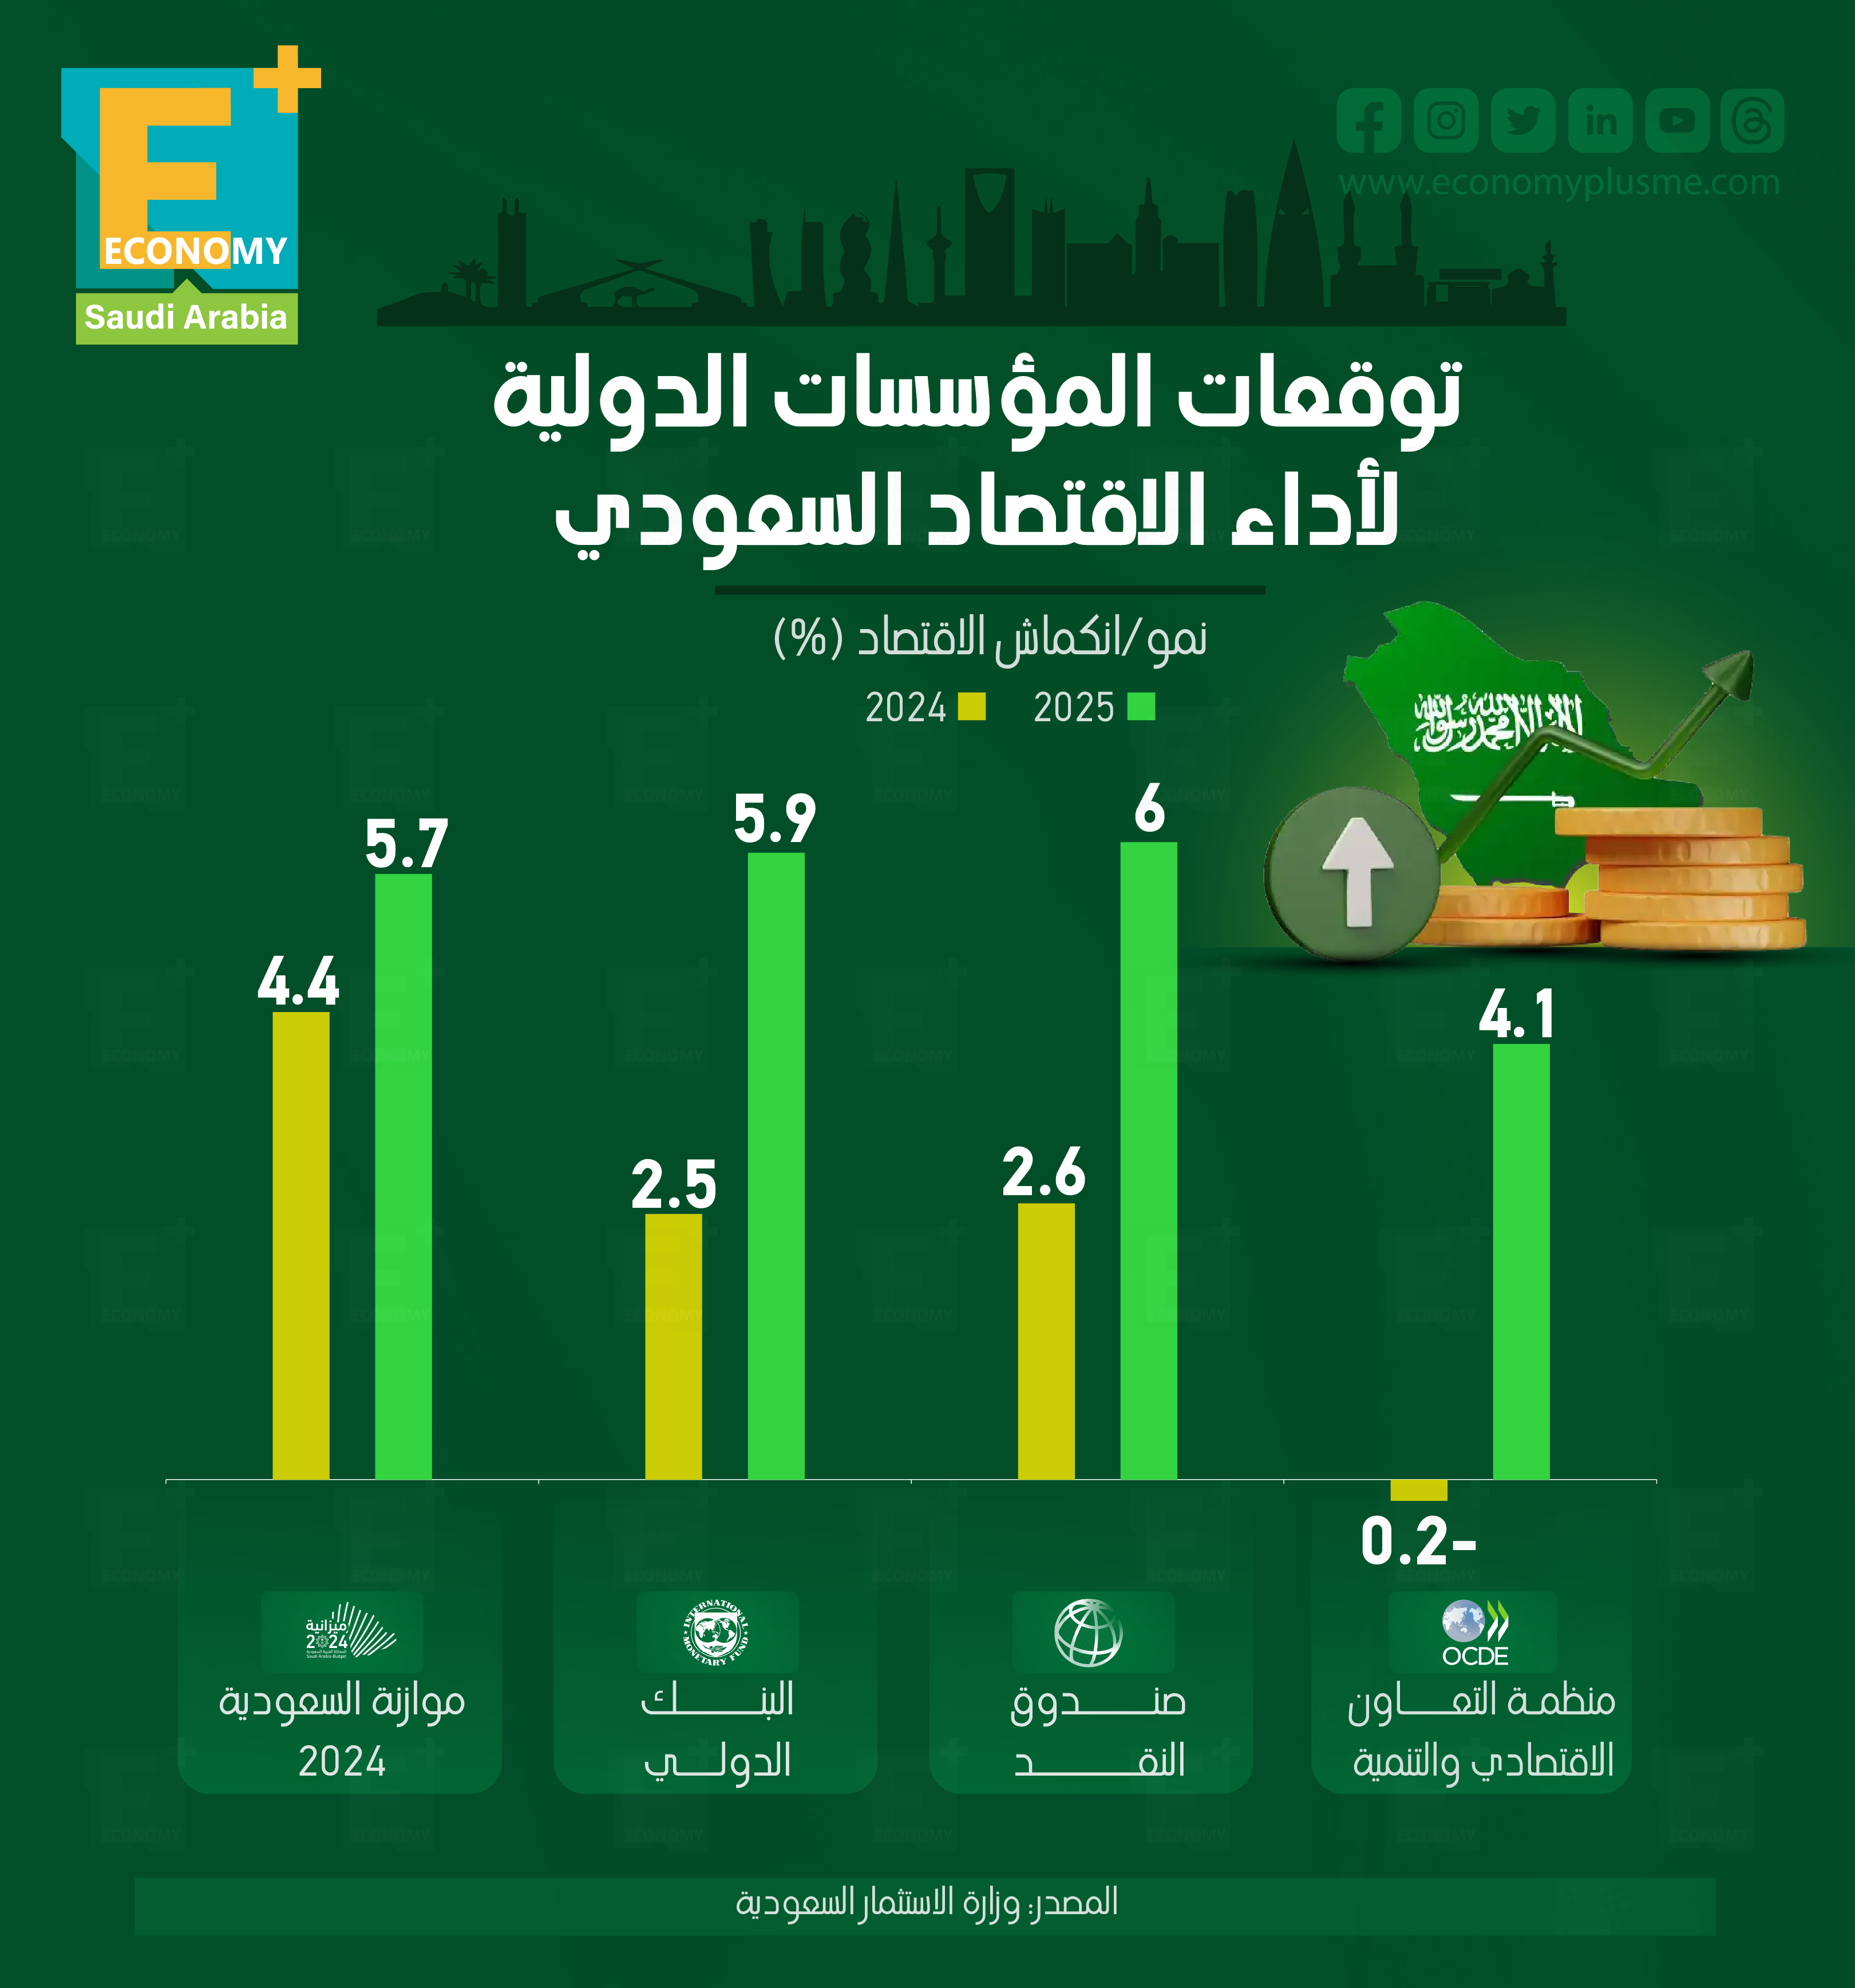 توقعات المؤسسات الدولية لأداء الاقتصاد السعودي